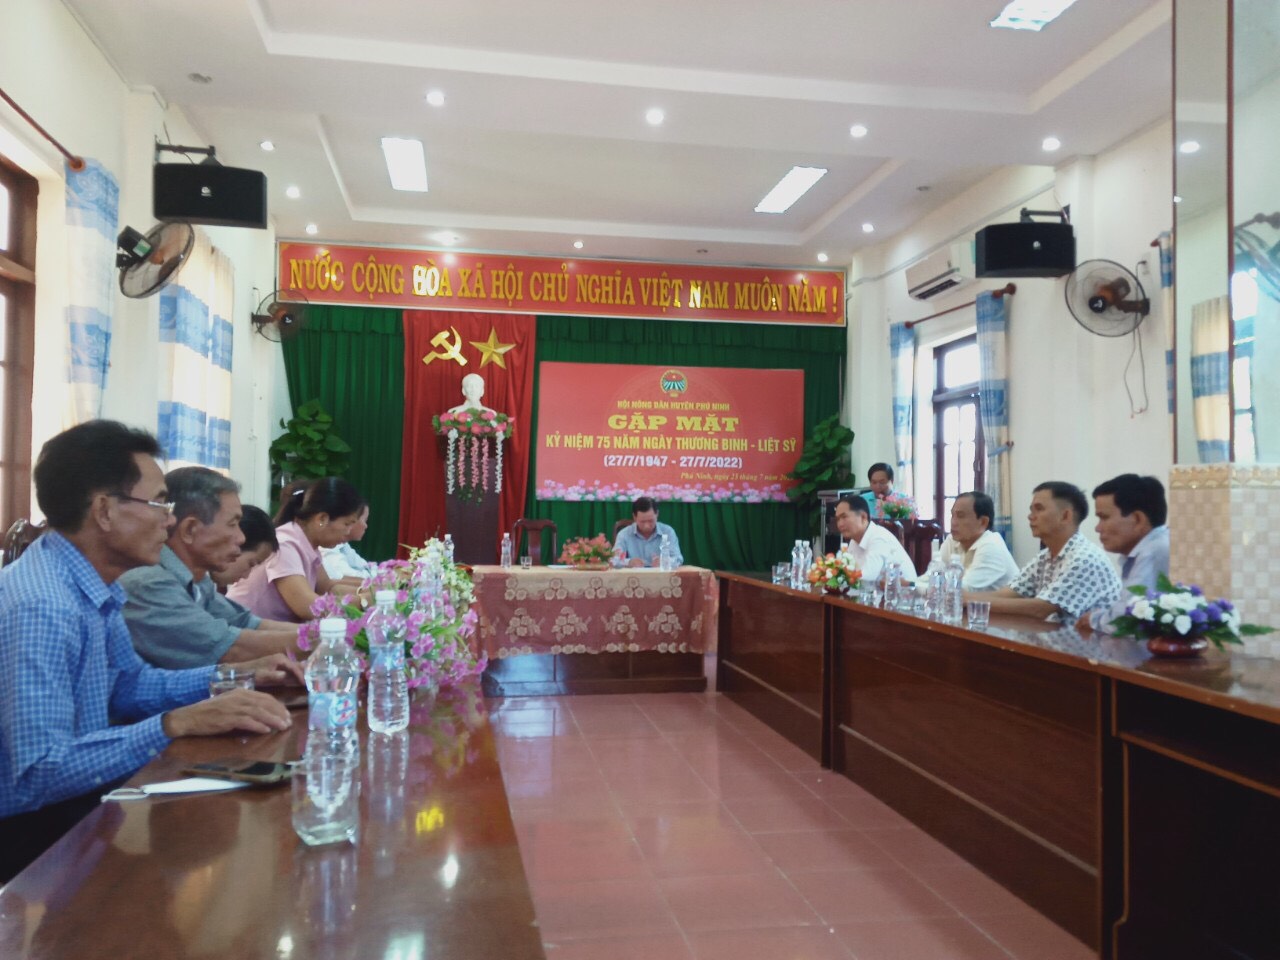 HND huyện Phú Ninh tổ chức gặp mặt cna sbooj Hội là con TBLS